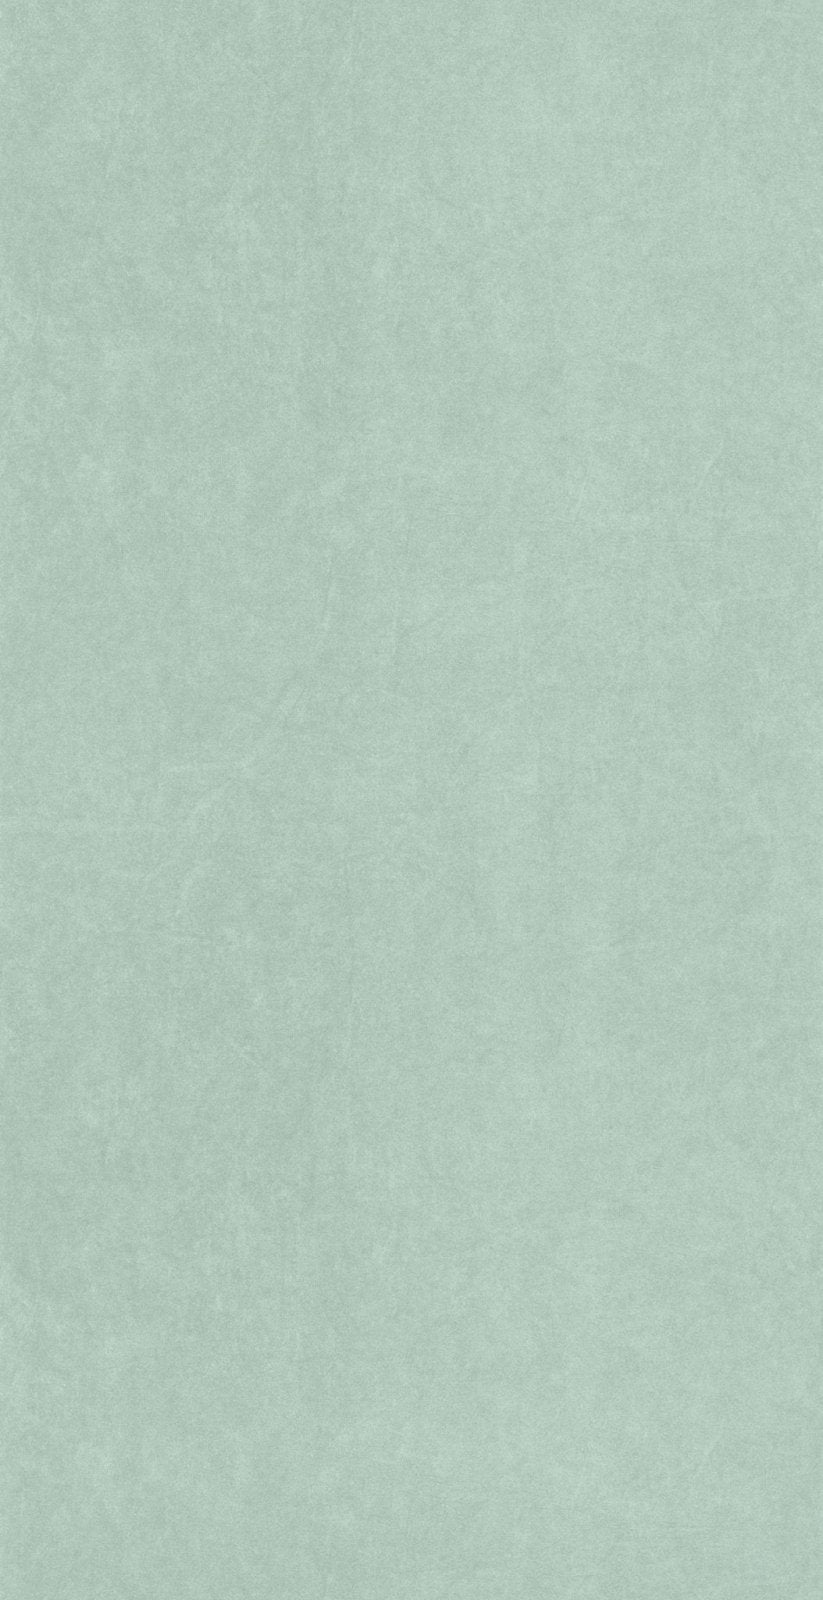 COLR82387254-Casadeco-Casadeco SO Color 5 Cotton Touch - Aloe Green Wallpaper-Decor Warehouse